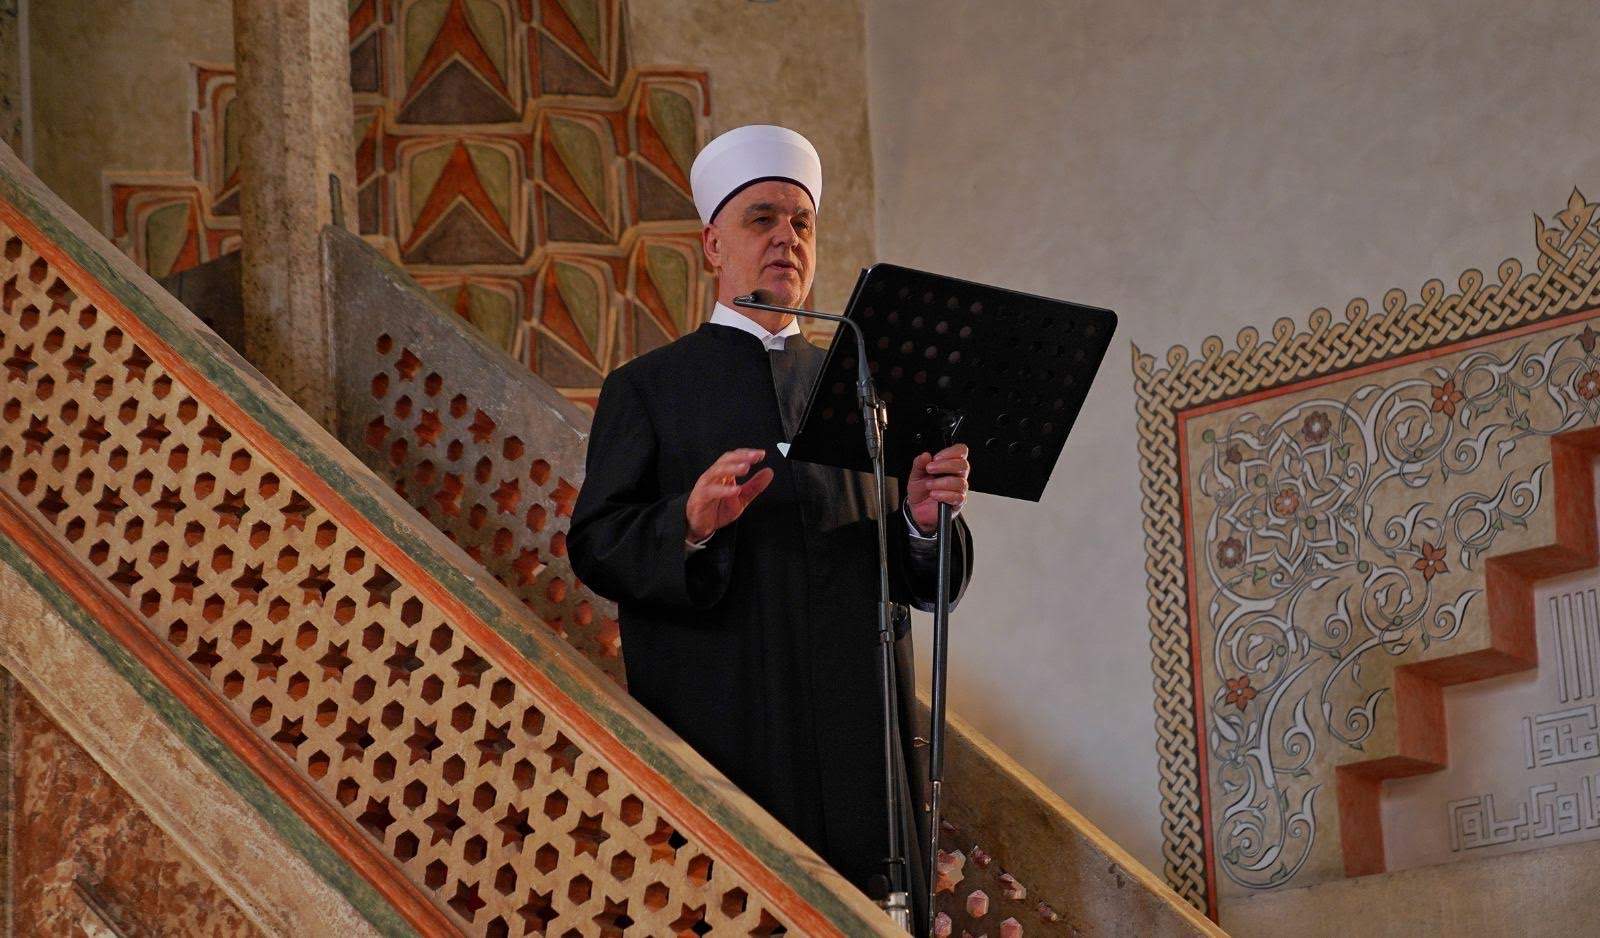 0-4.jpeg - Reisul-ulema u Gazi Husrev-begovoj džamiji: Ramazan je velika škola za vjernika